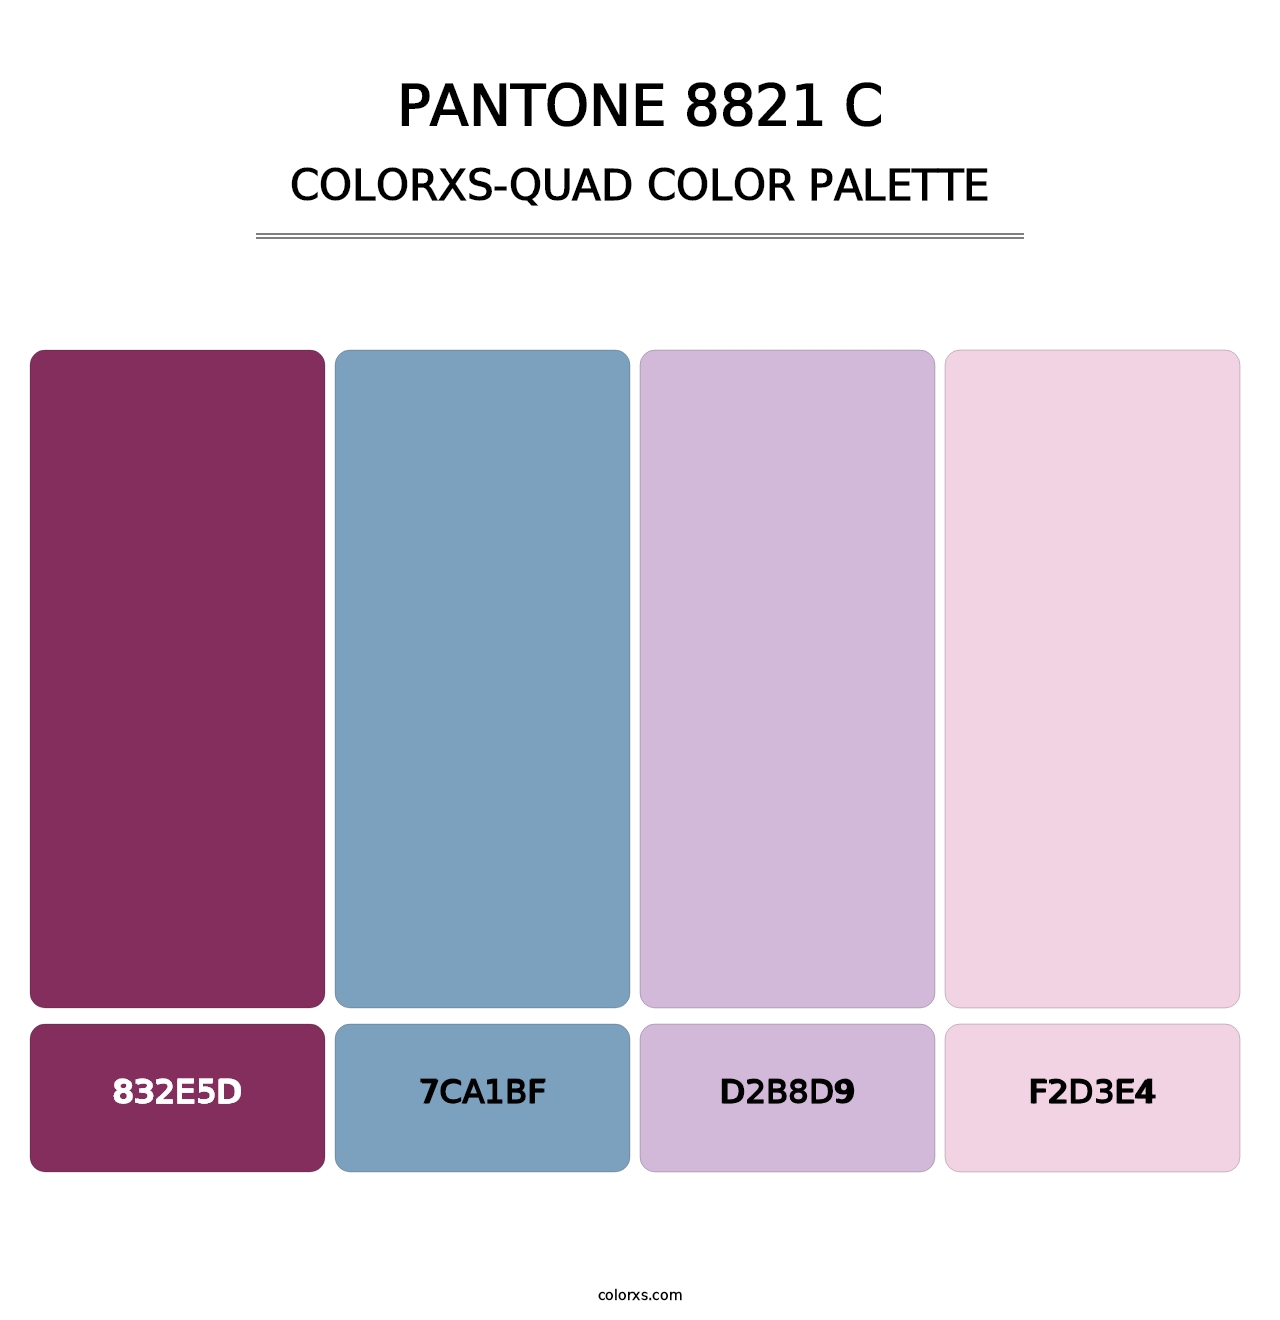 PANTONE 8821 C - Colorxs Quad Palette